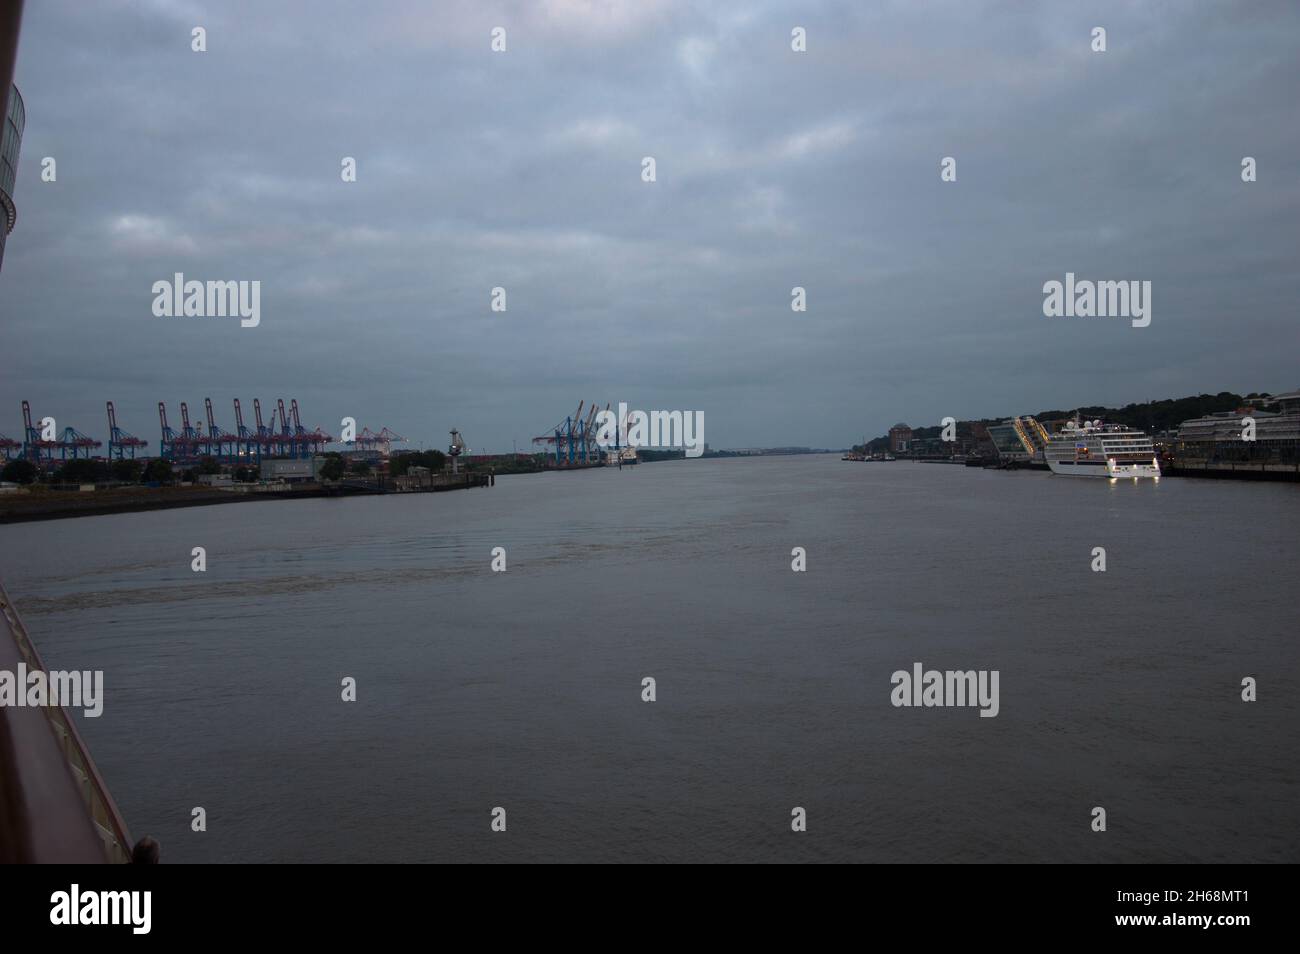 Hamburguesa Hafen eine Reise beginnt mit AIDA Foto de stock